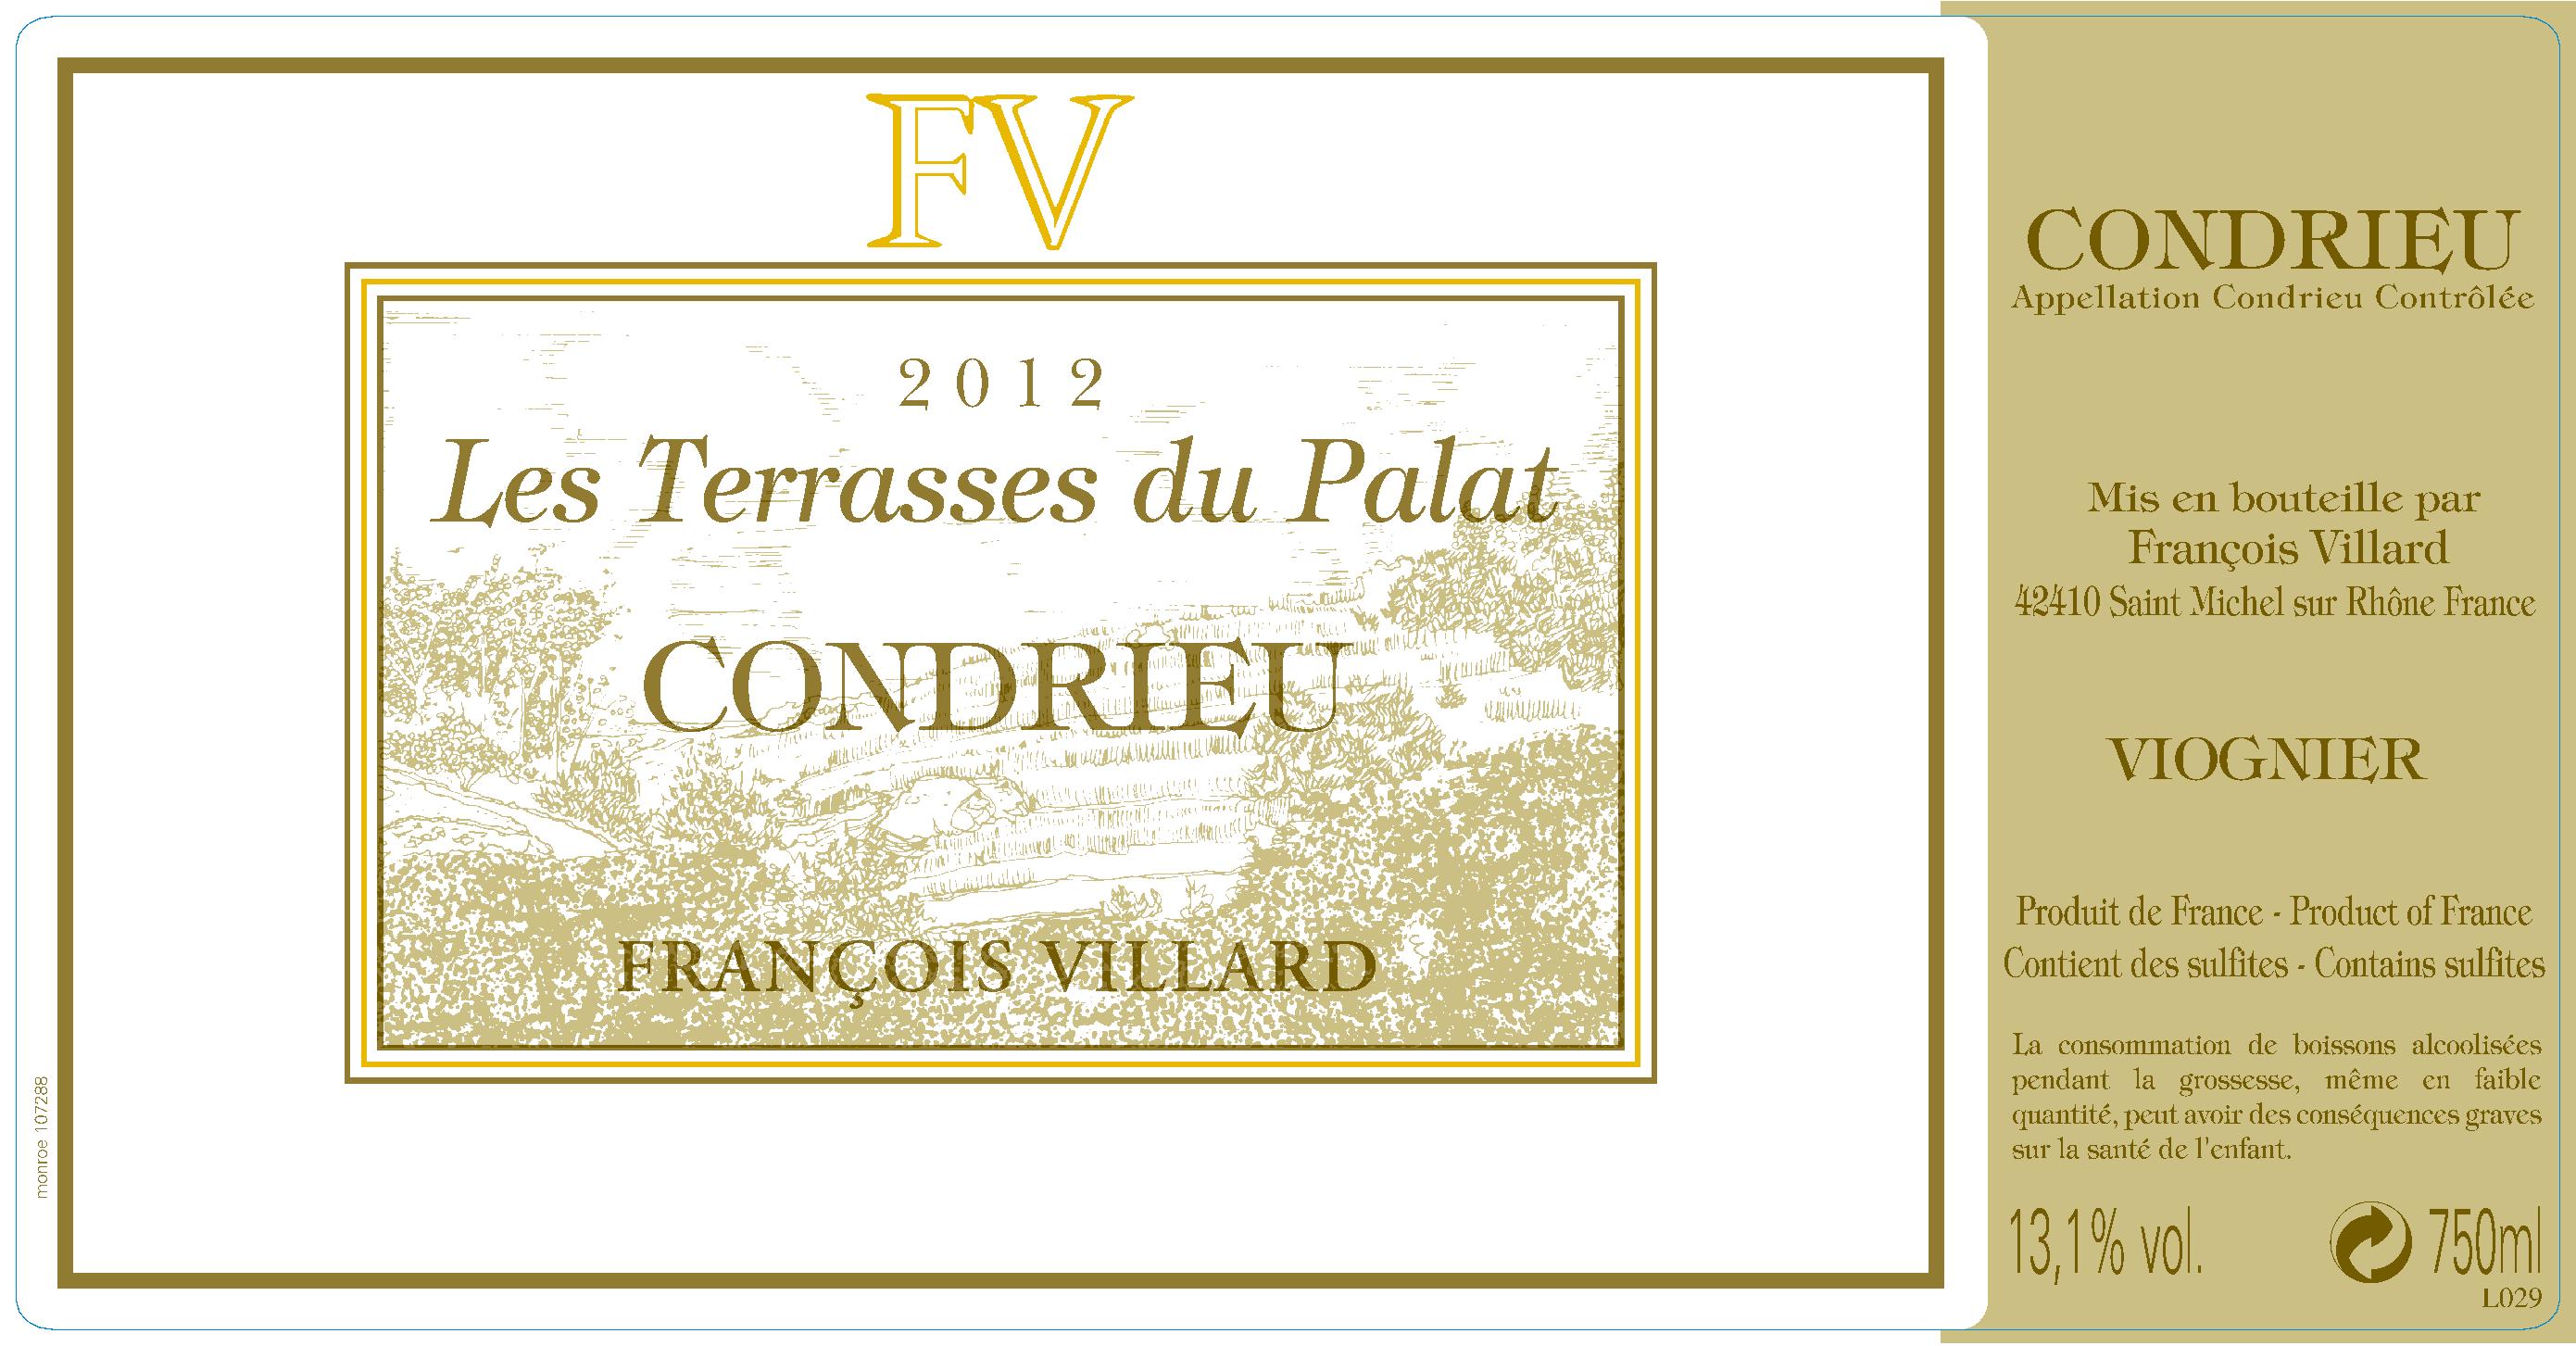 2017 Domaine Francois Villard Condrieu Les Terrasses du Palat - click image for full description